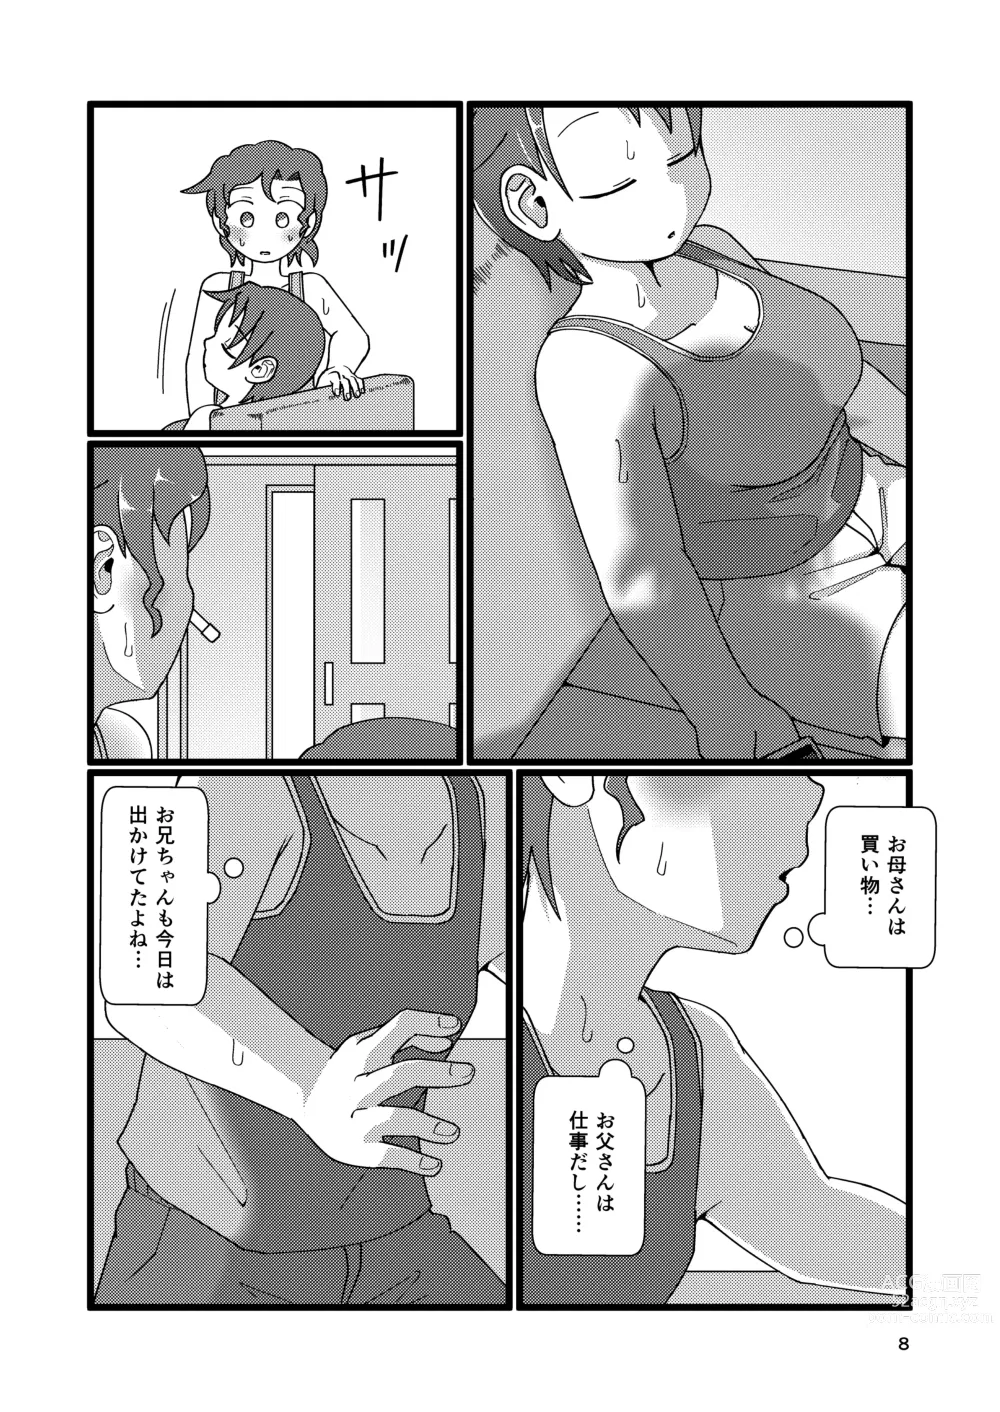 Page 8 of doujinshi Boku to Natsuyasumi no Ane